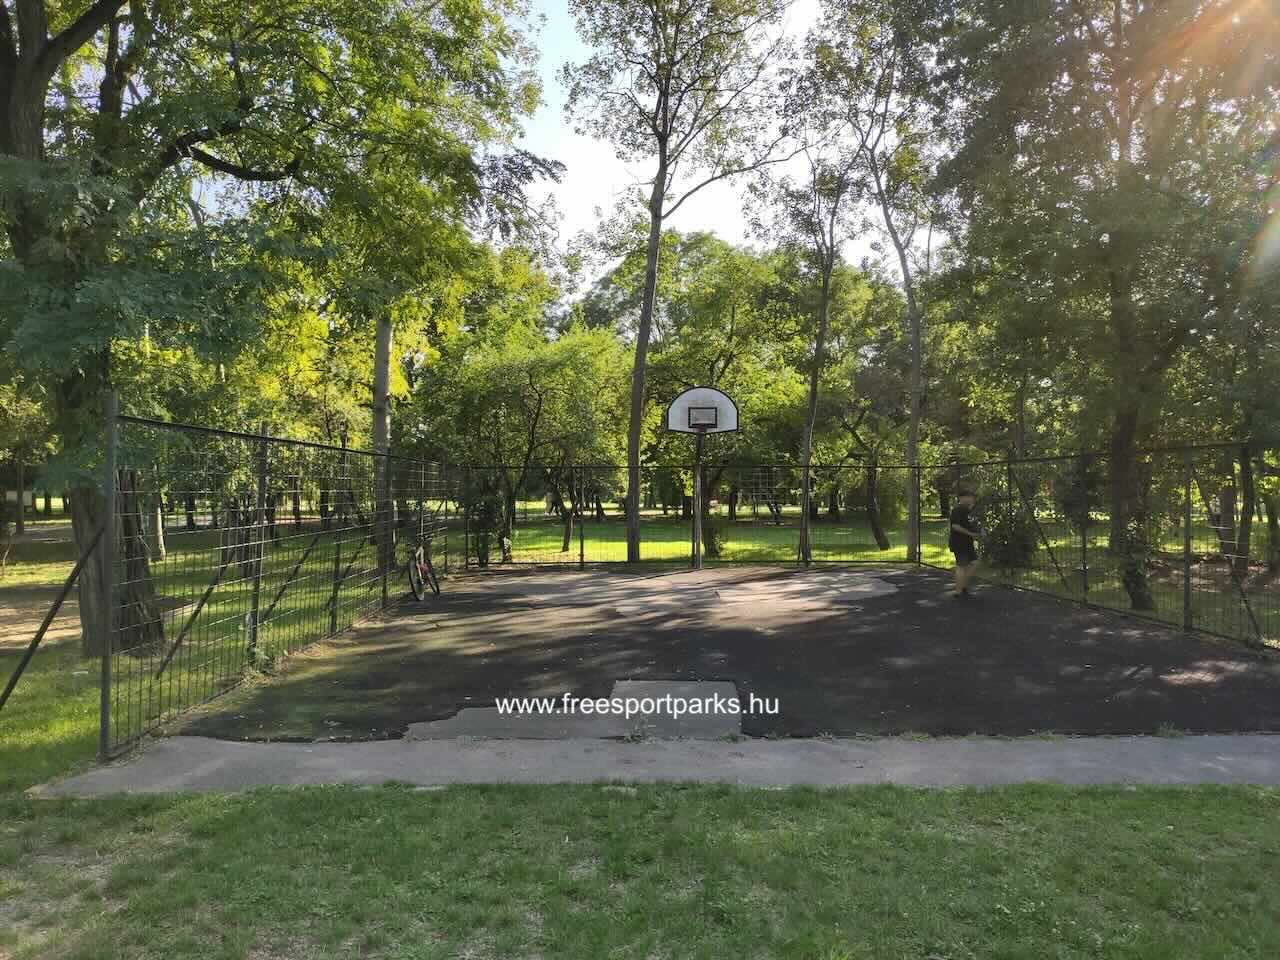 streetball pálya, Óhegy Szabadidőpark, Kőbánya - Free Sport Parks térkép